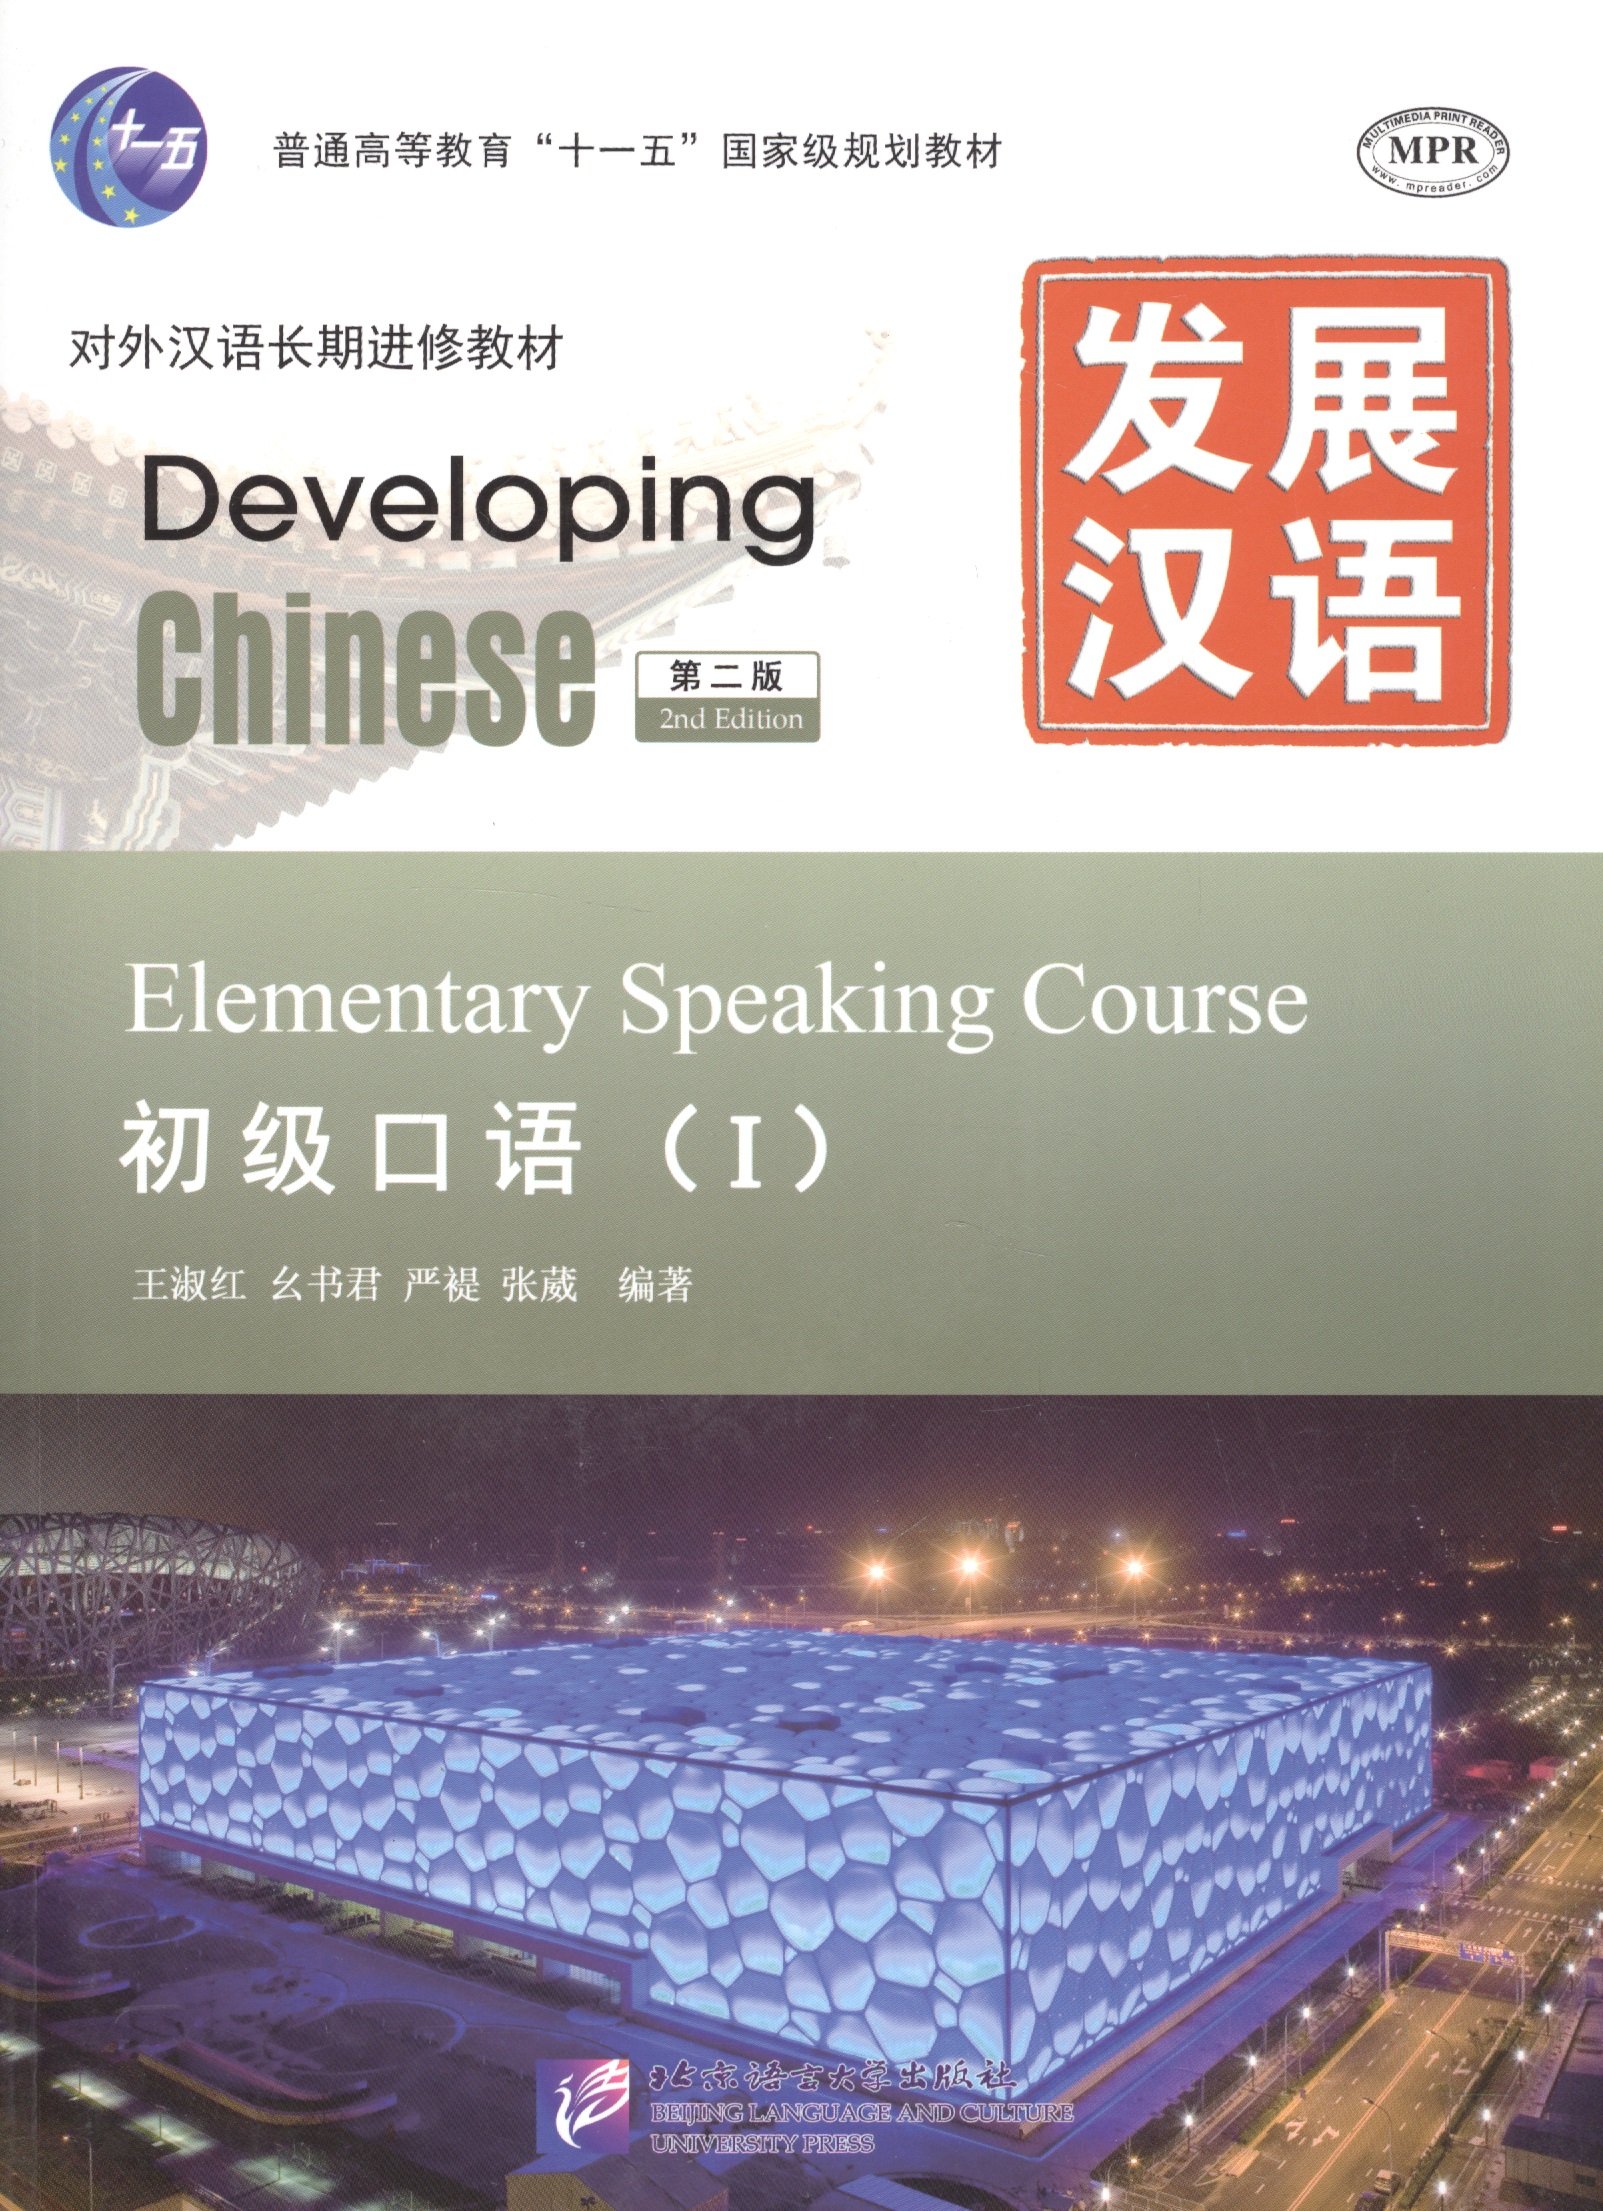 Developing Chinese: Elementary 1 (2nd Edition) Speaking Course (+MP3) / Развивая китайский. Второе издание. Начальный уровень. Часть 1. Курс говорения +MP3